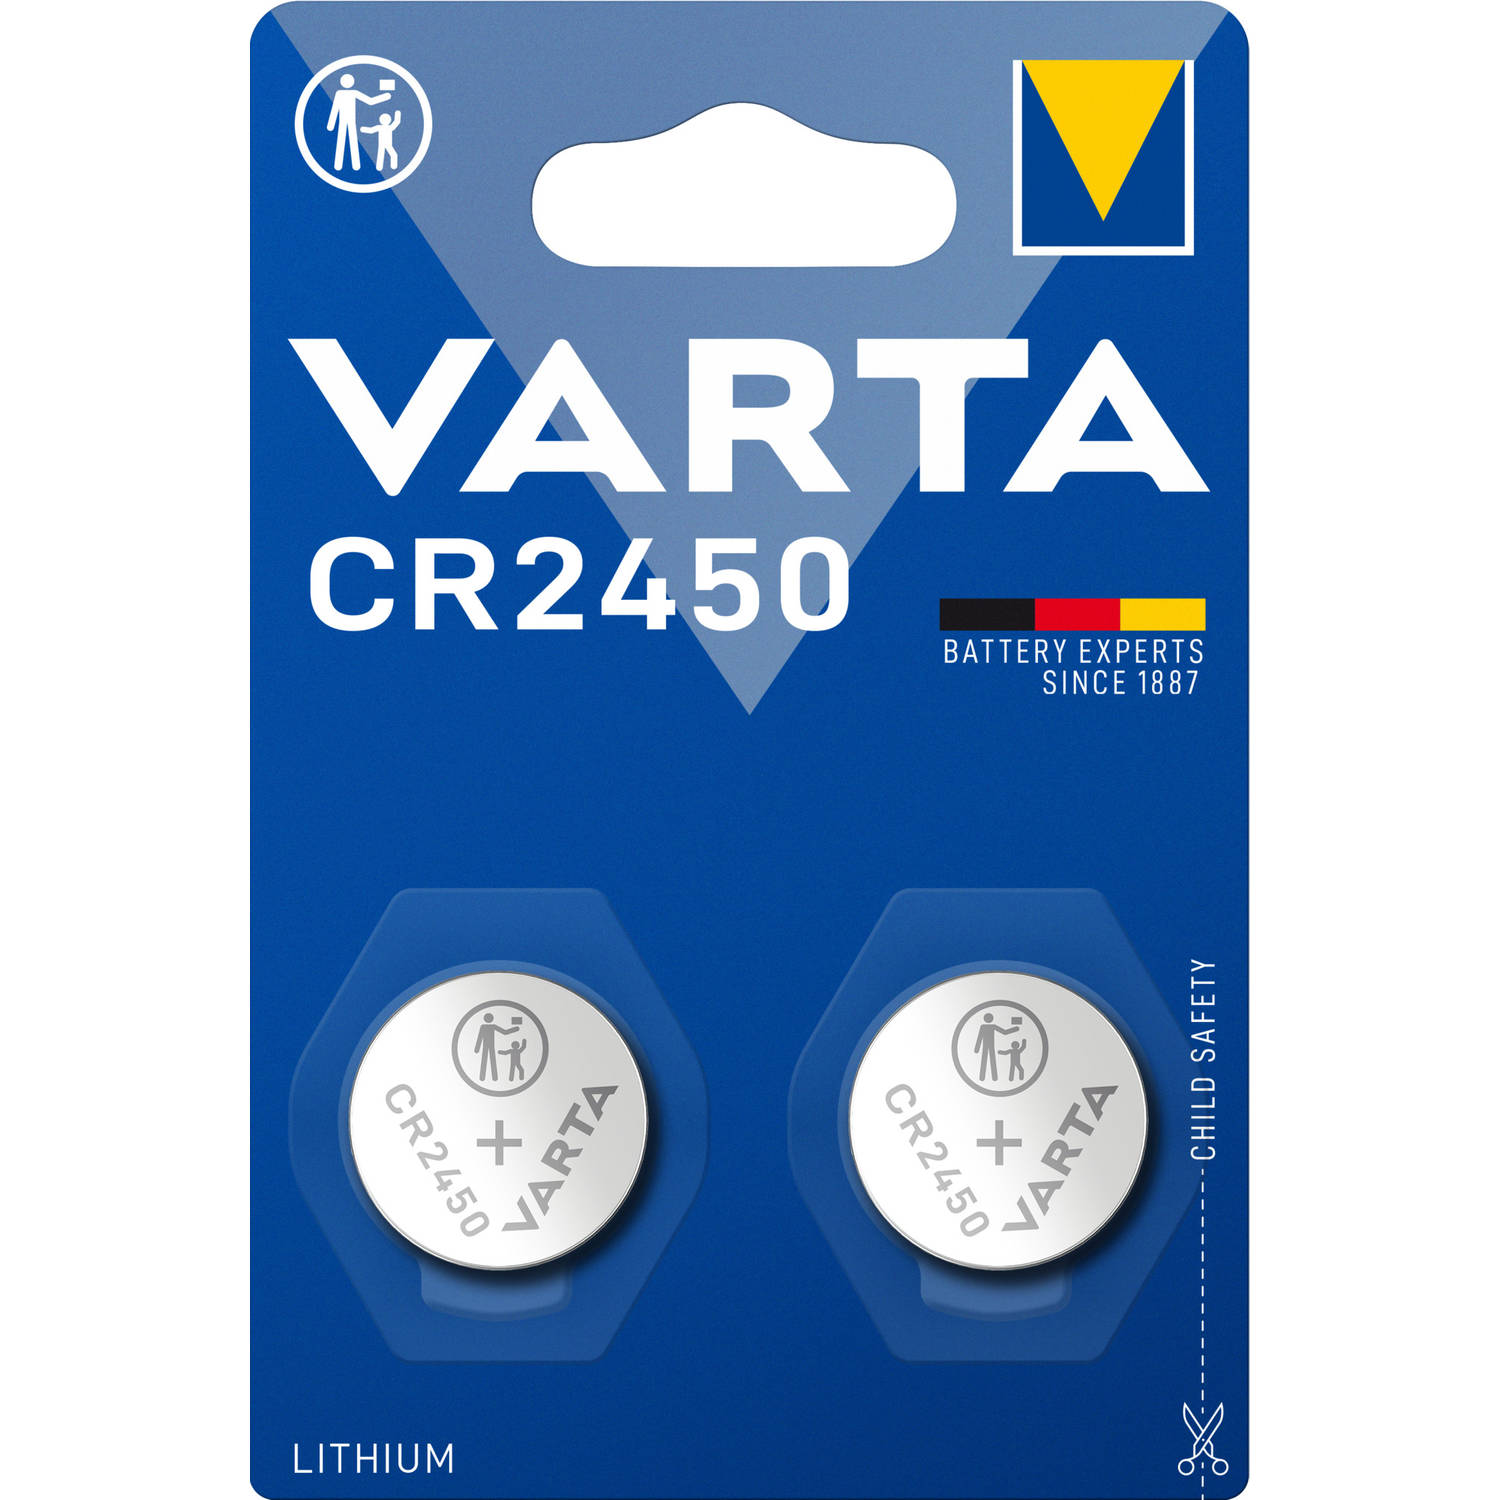 samenvoegen Rechtdoor Dhr VARTA Professional CR2450 batterij - 2 stuks | Blokker